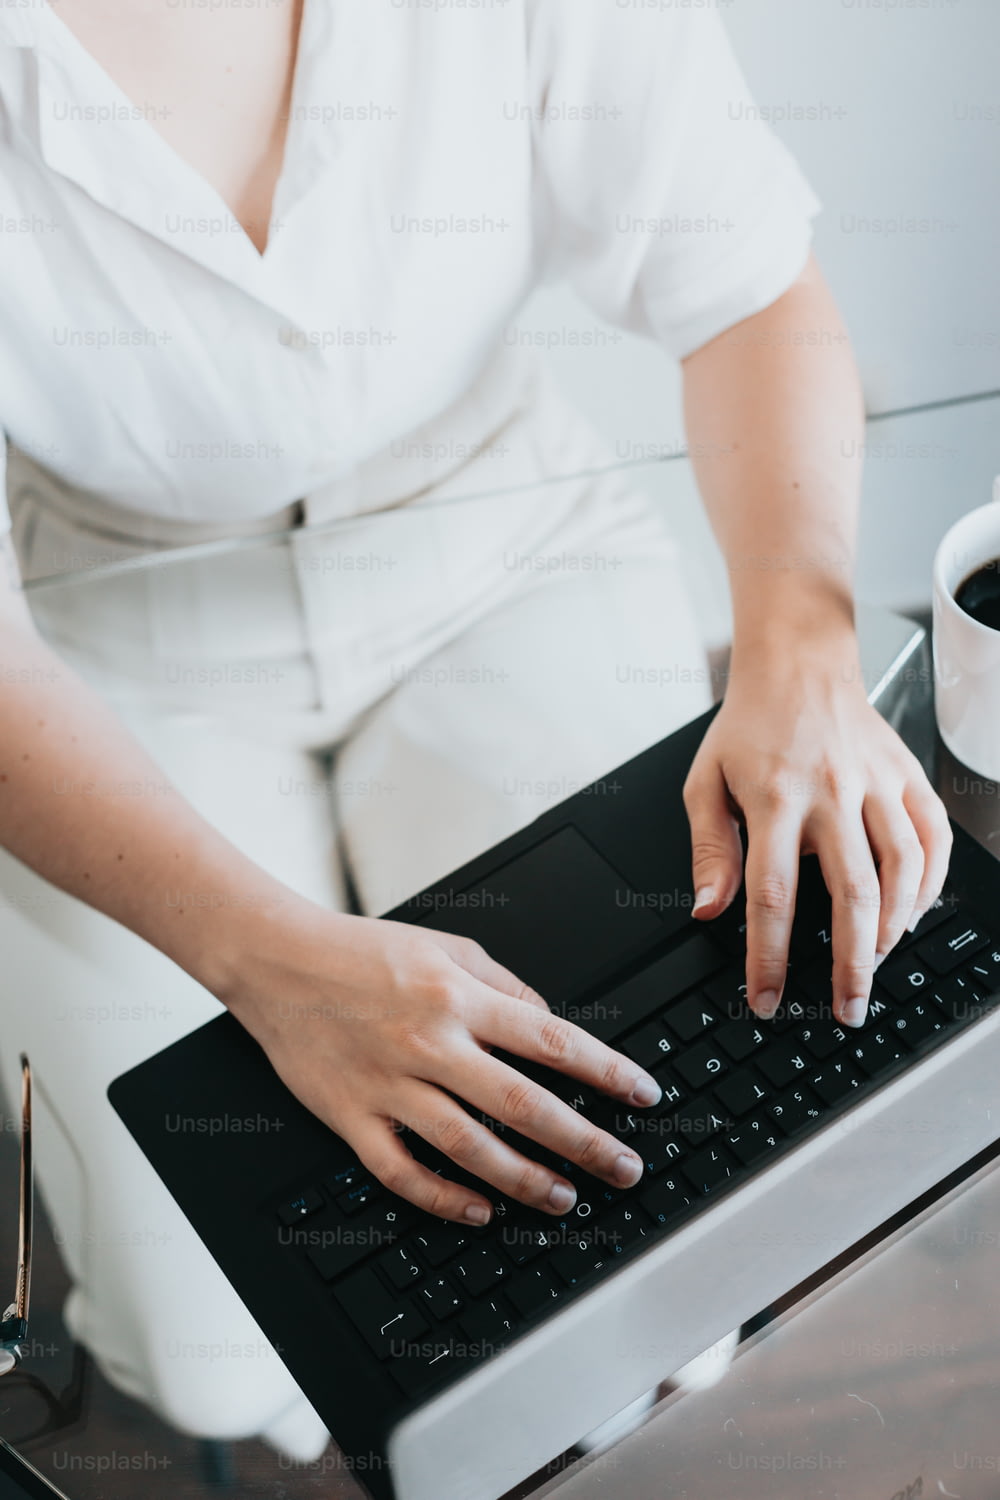 Una mujer está escribiendo en el teclado de una computadora